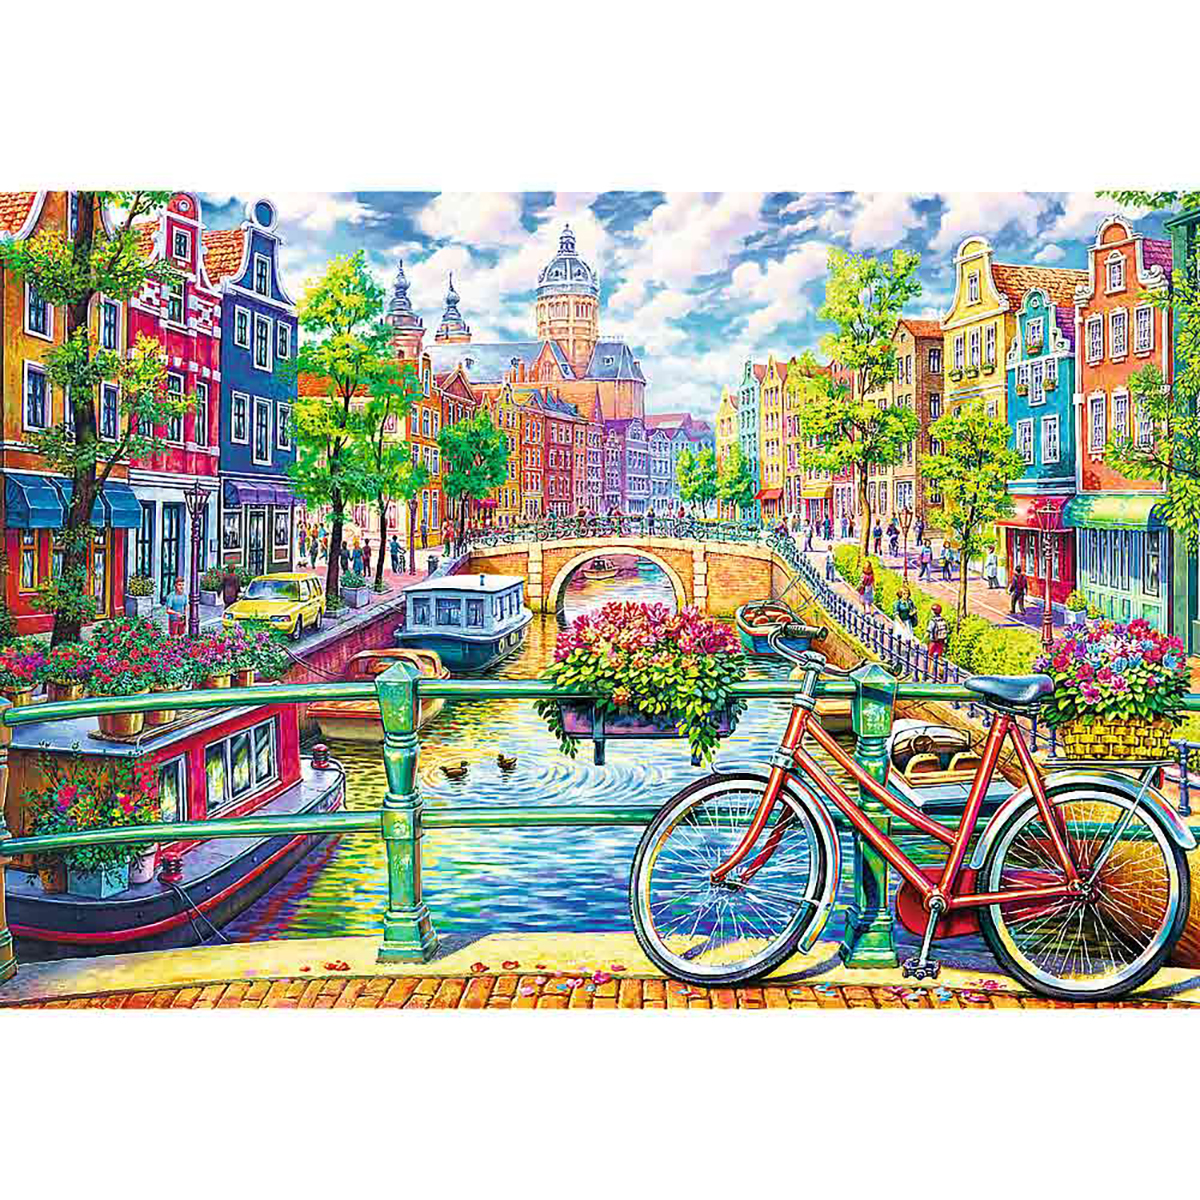 TREFL Premium Puzzle 1500 - Puzzle Teile G Amsterdams